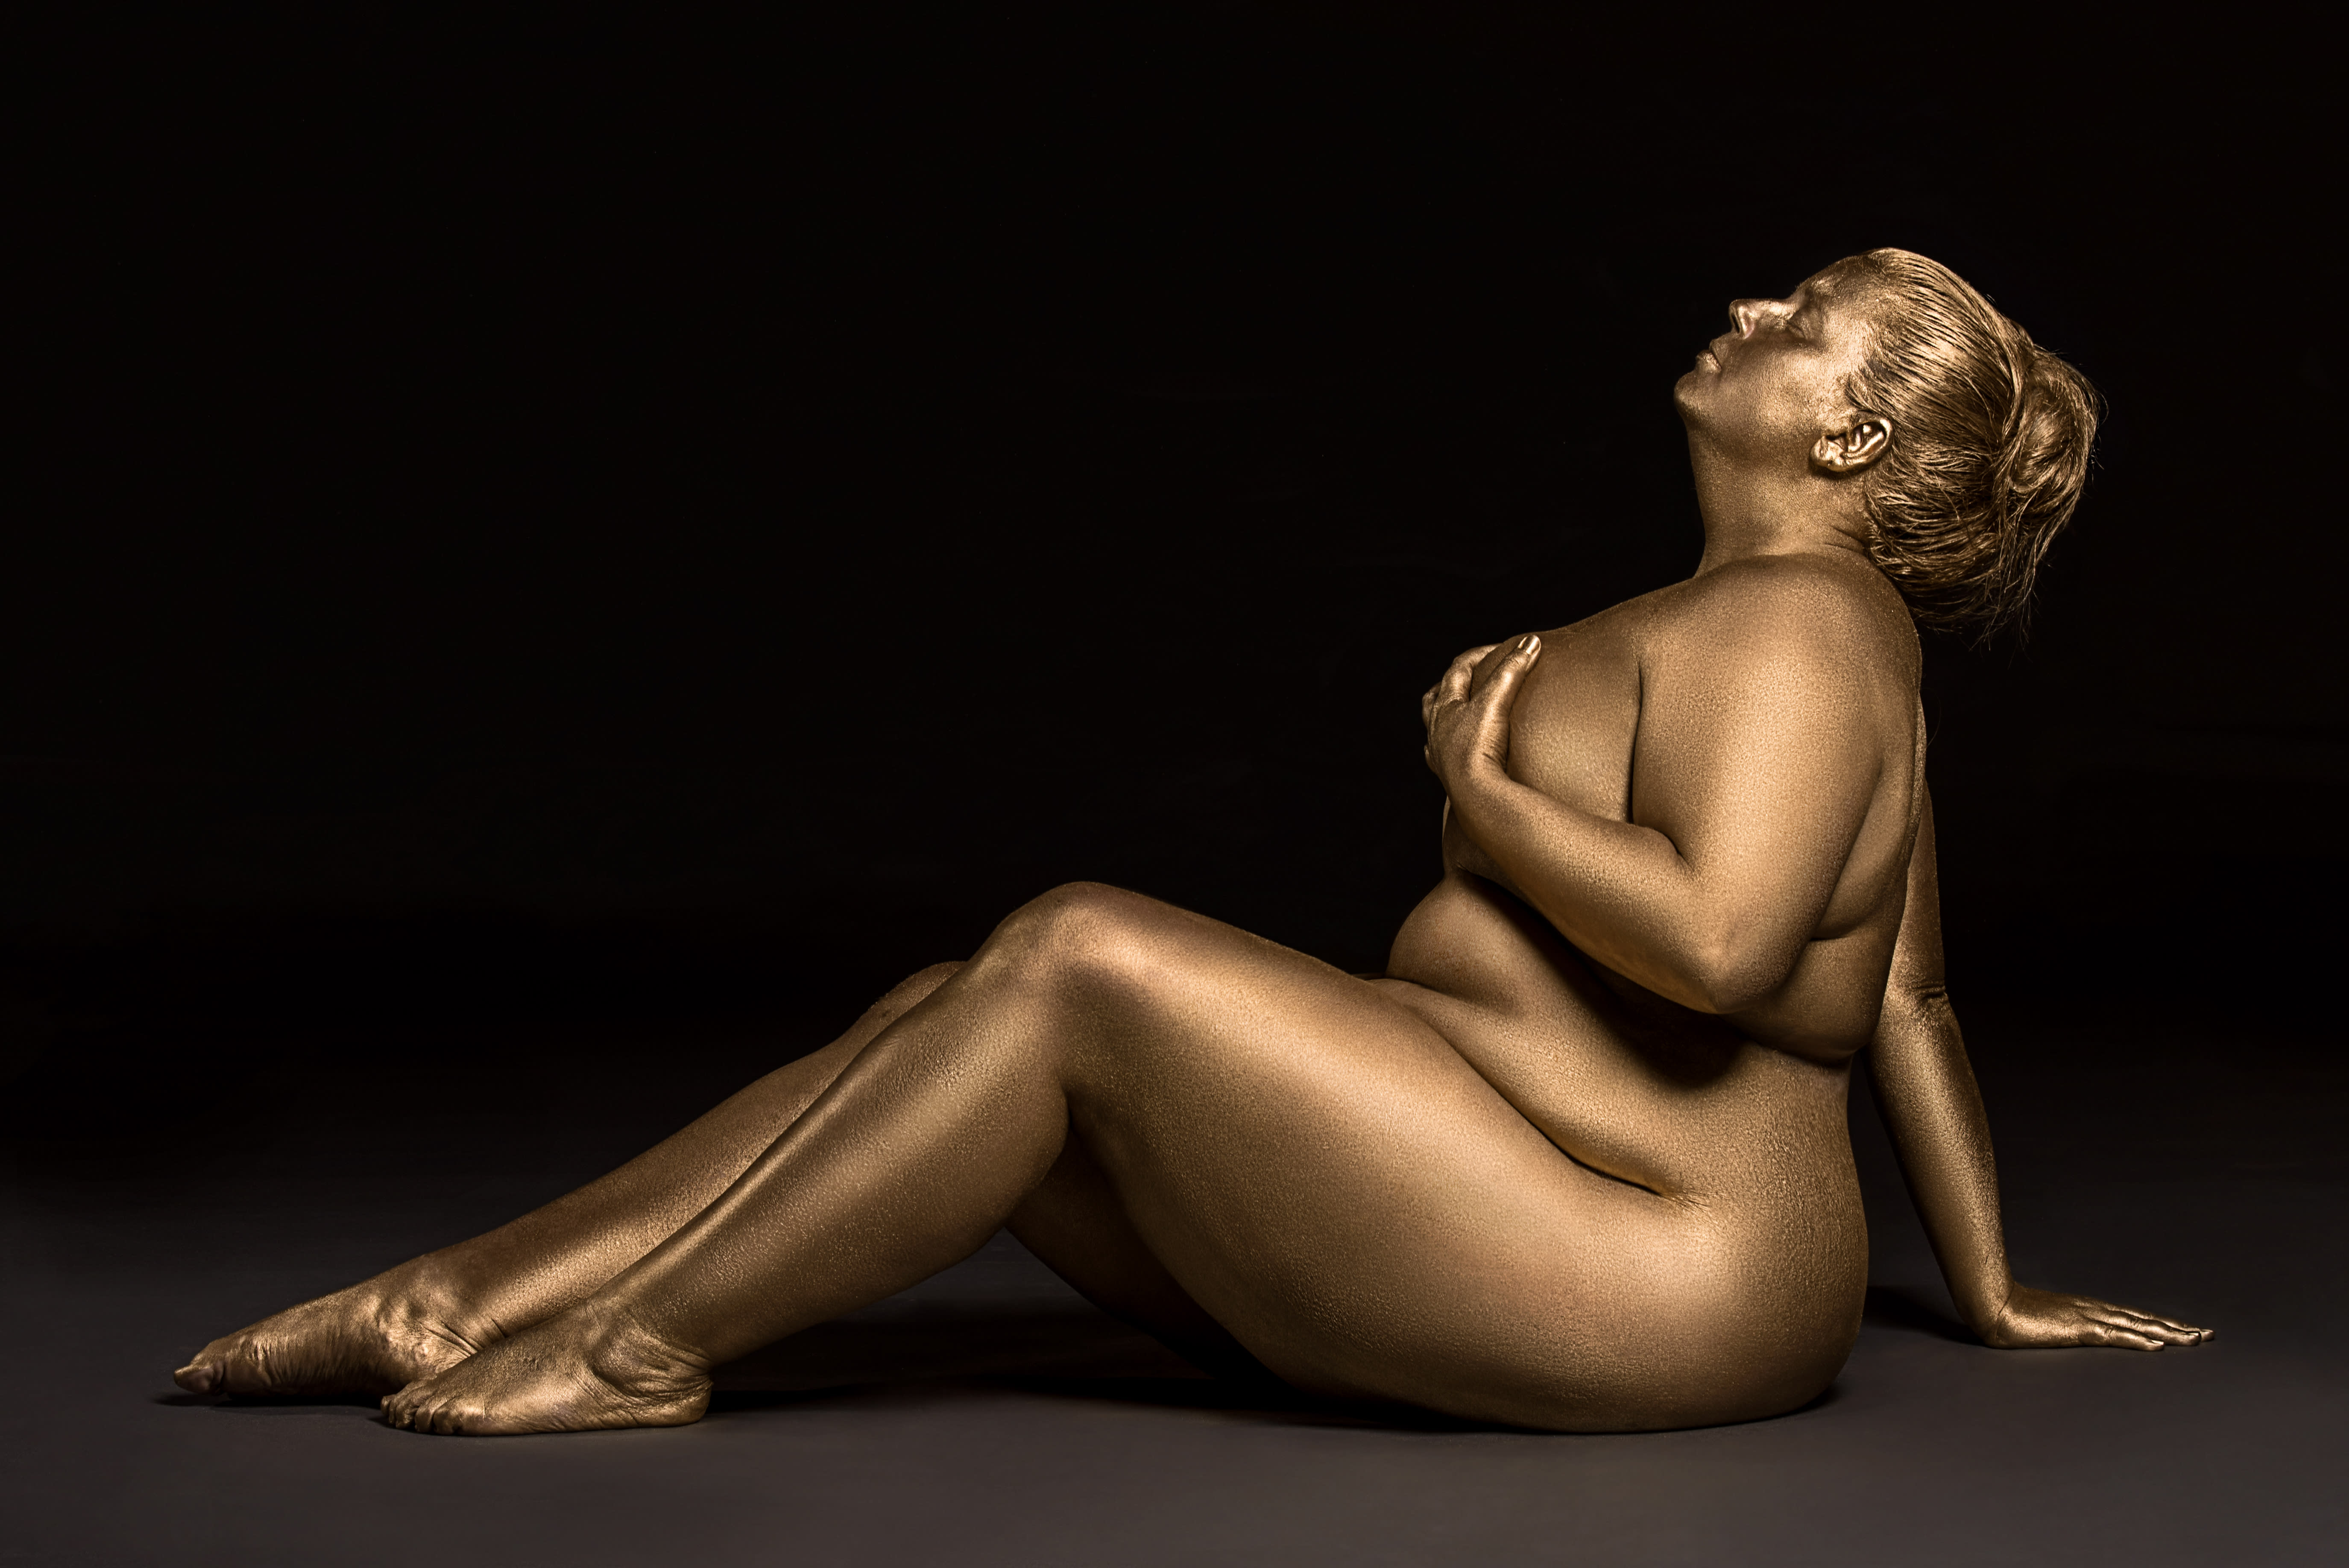 This metallic photoshoot is a glorious celebration of plus-size bodies.